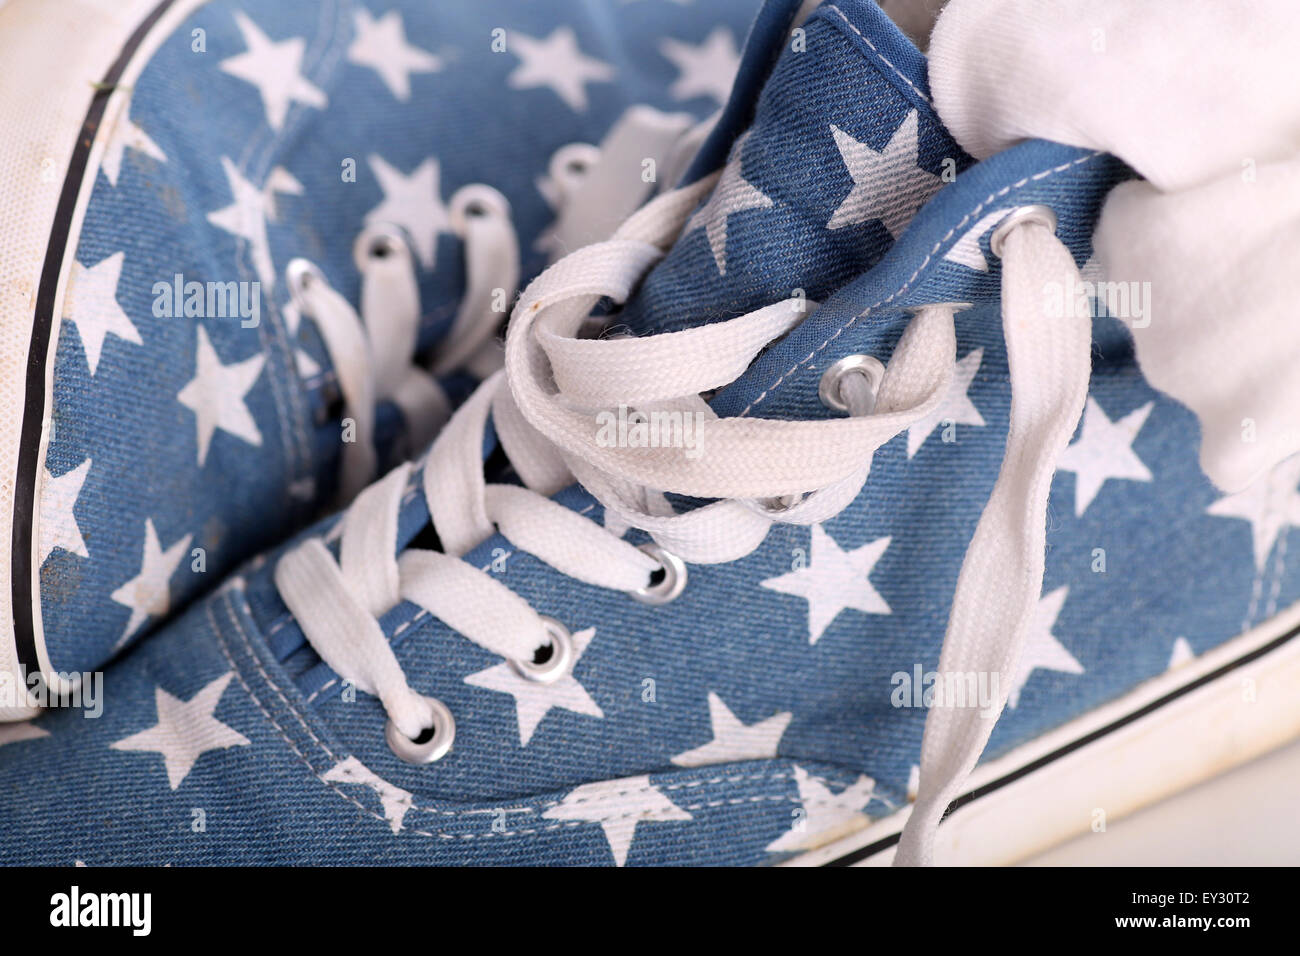 Blue fantaisie chaussures Converse faux ou formateurs avec des étoiles sur eux Banque D'Images